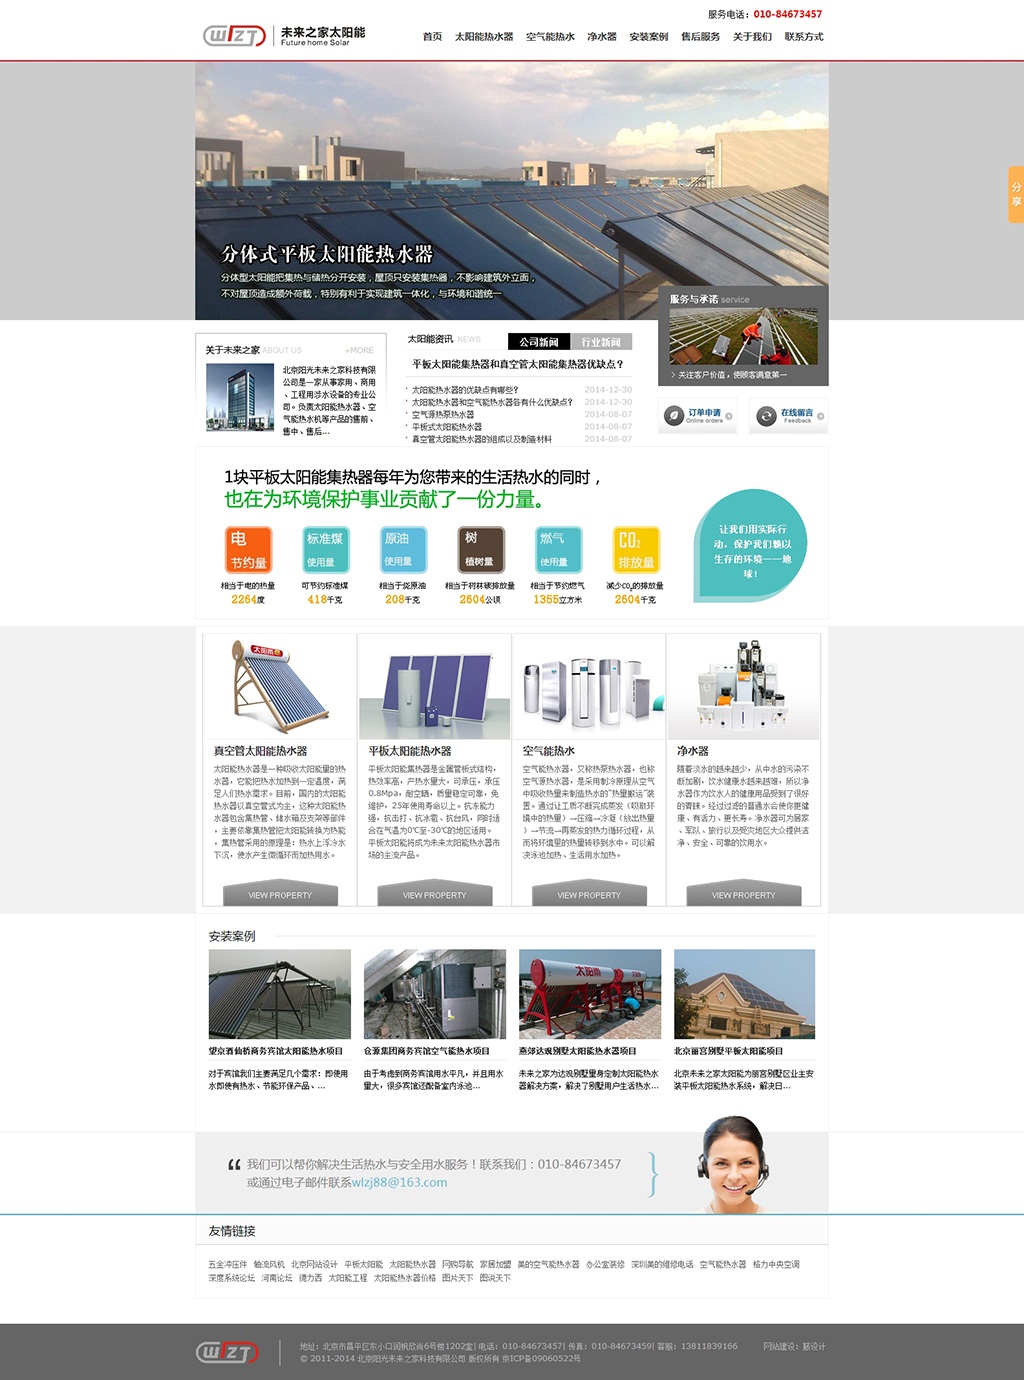 太阳能网站首页设计